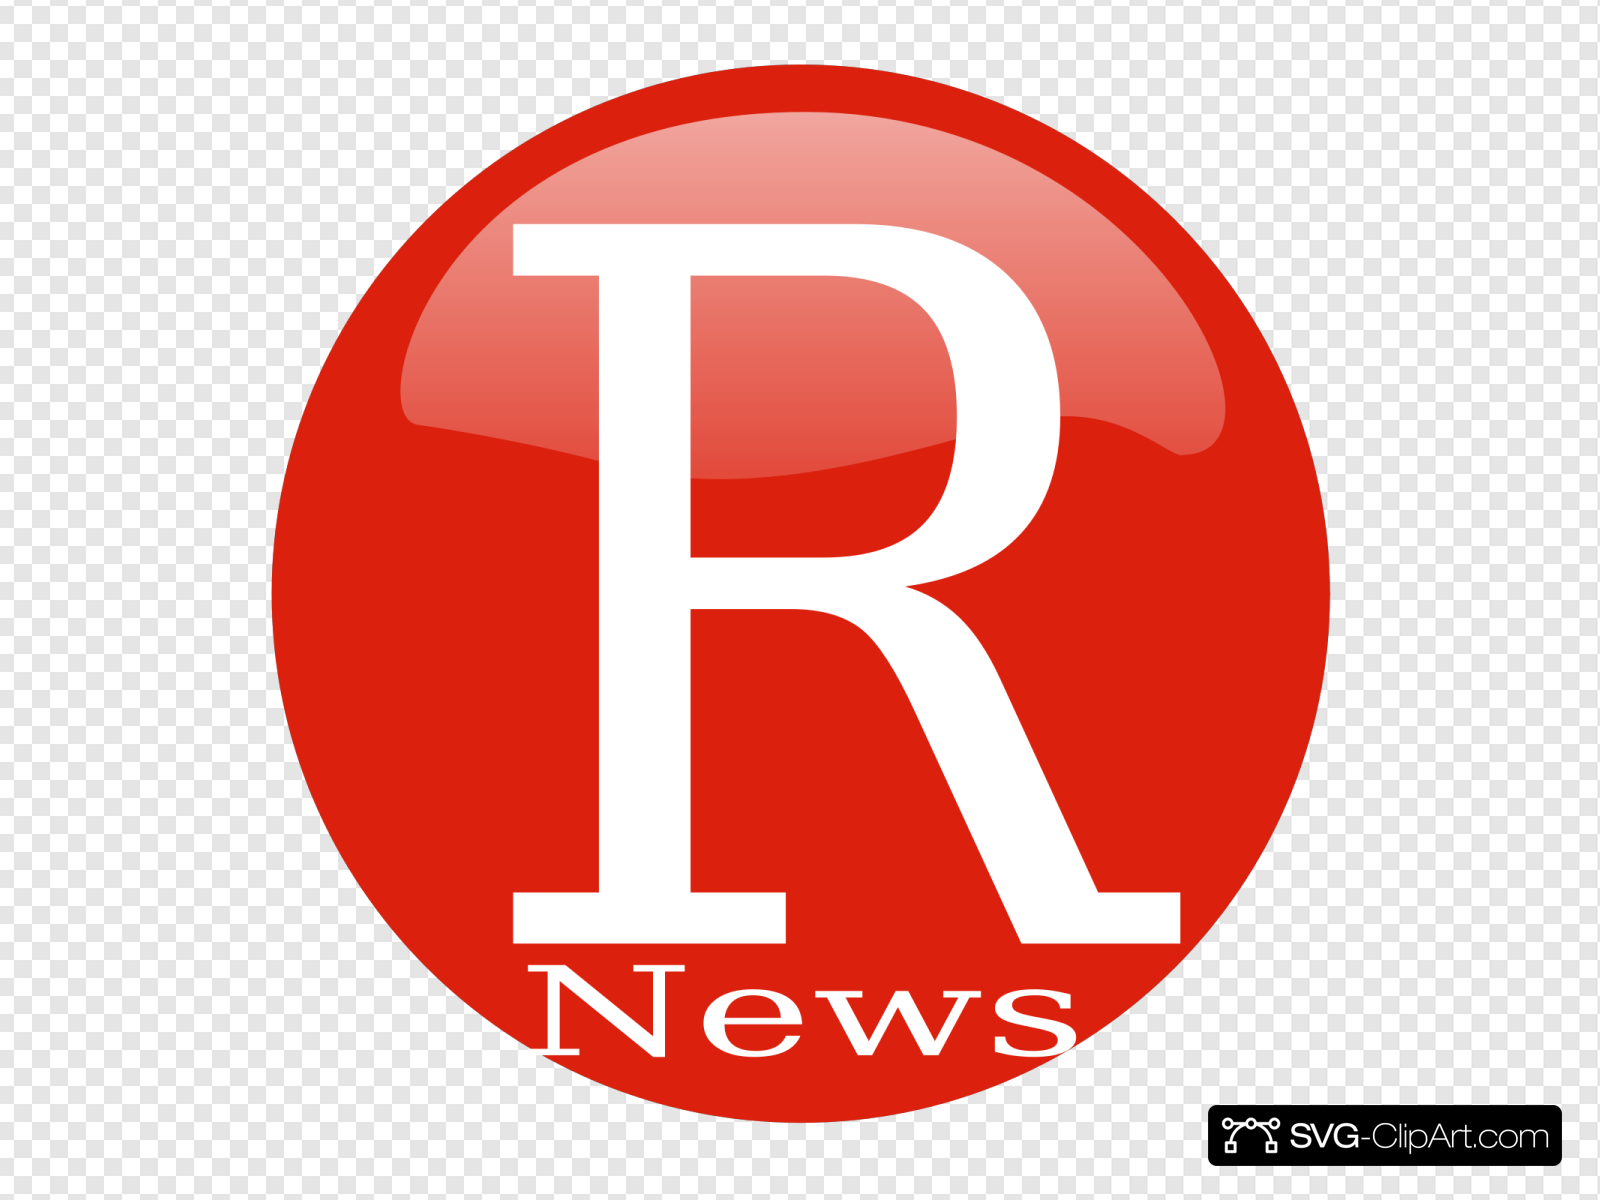 Ripe News Icon Clip art, Icon and SVG.